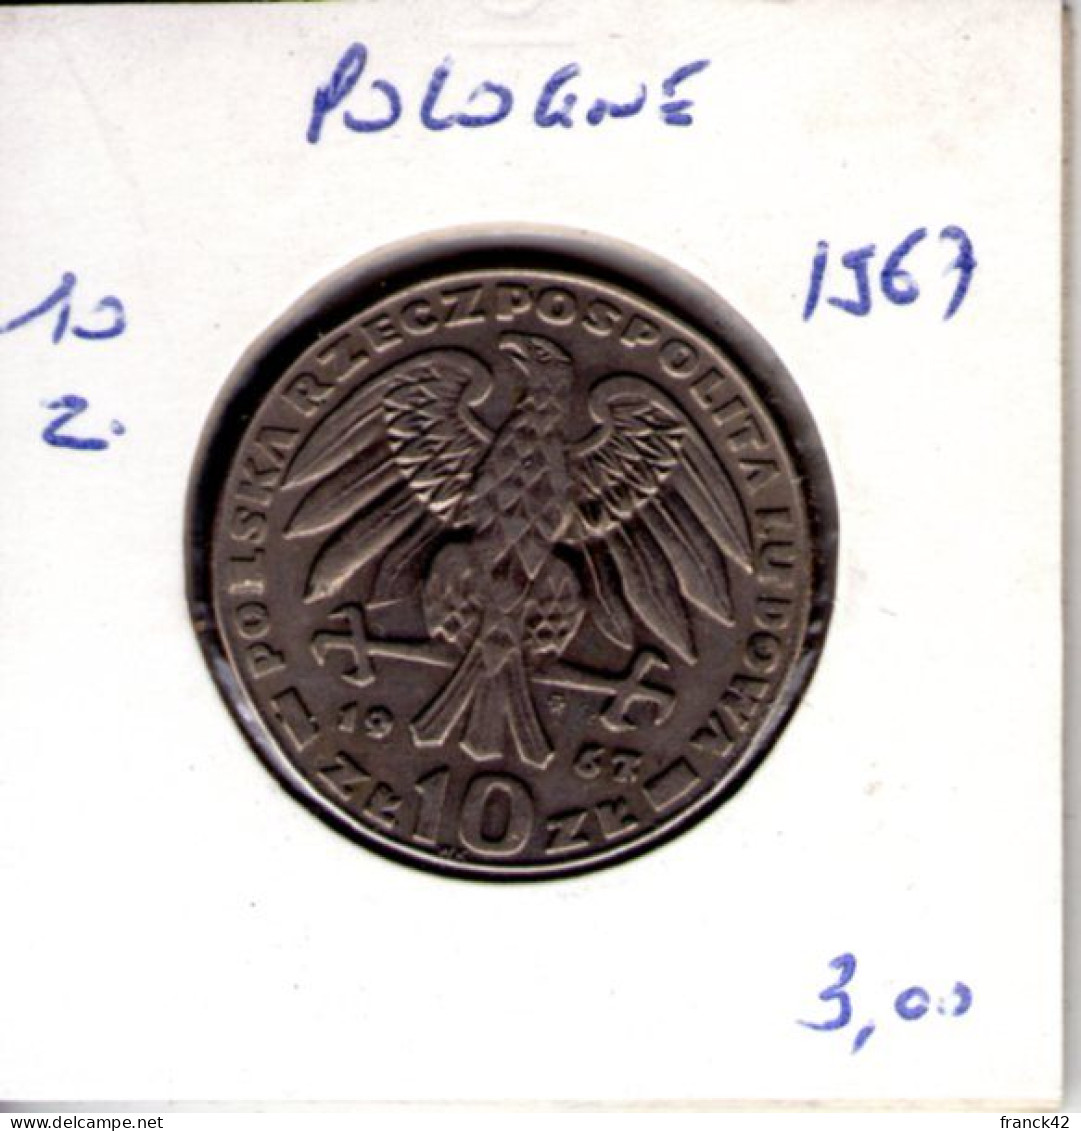 Pologne. 10 Z. 1967 - Pologne